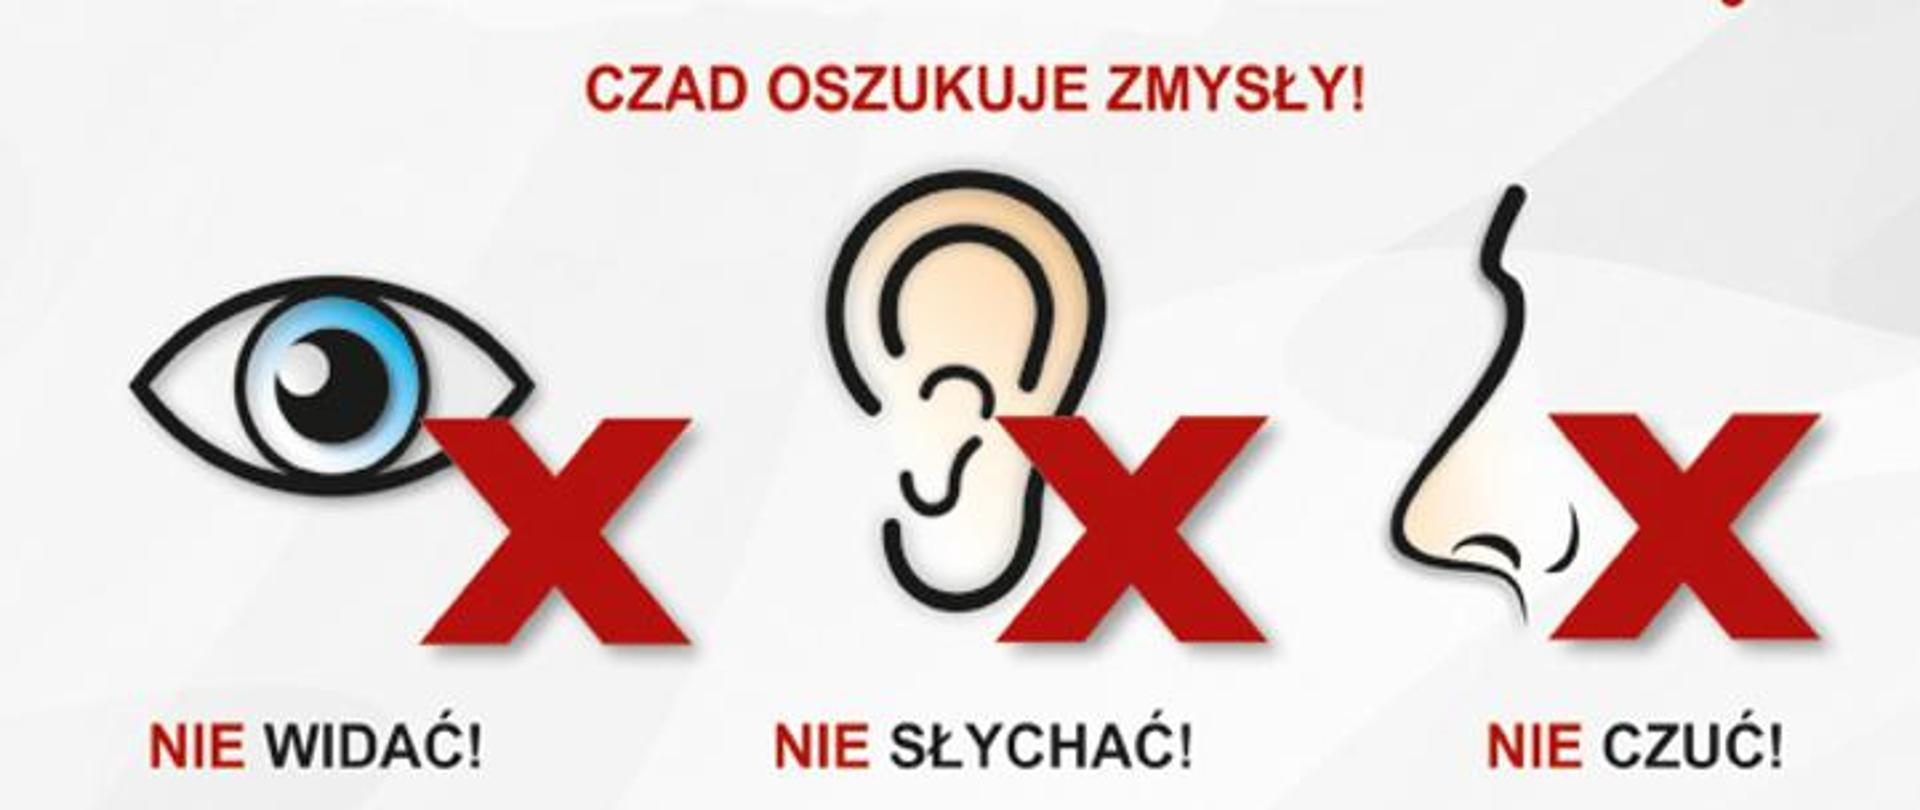 Na zdjęciu przedstawione trzy grafiki: oko, ucho i nos ze znakiem X informujące o tym , że czadu nie widać, nie słychać i nie czuć.